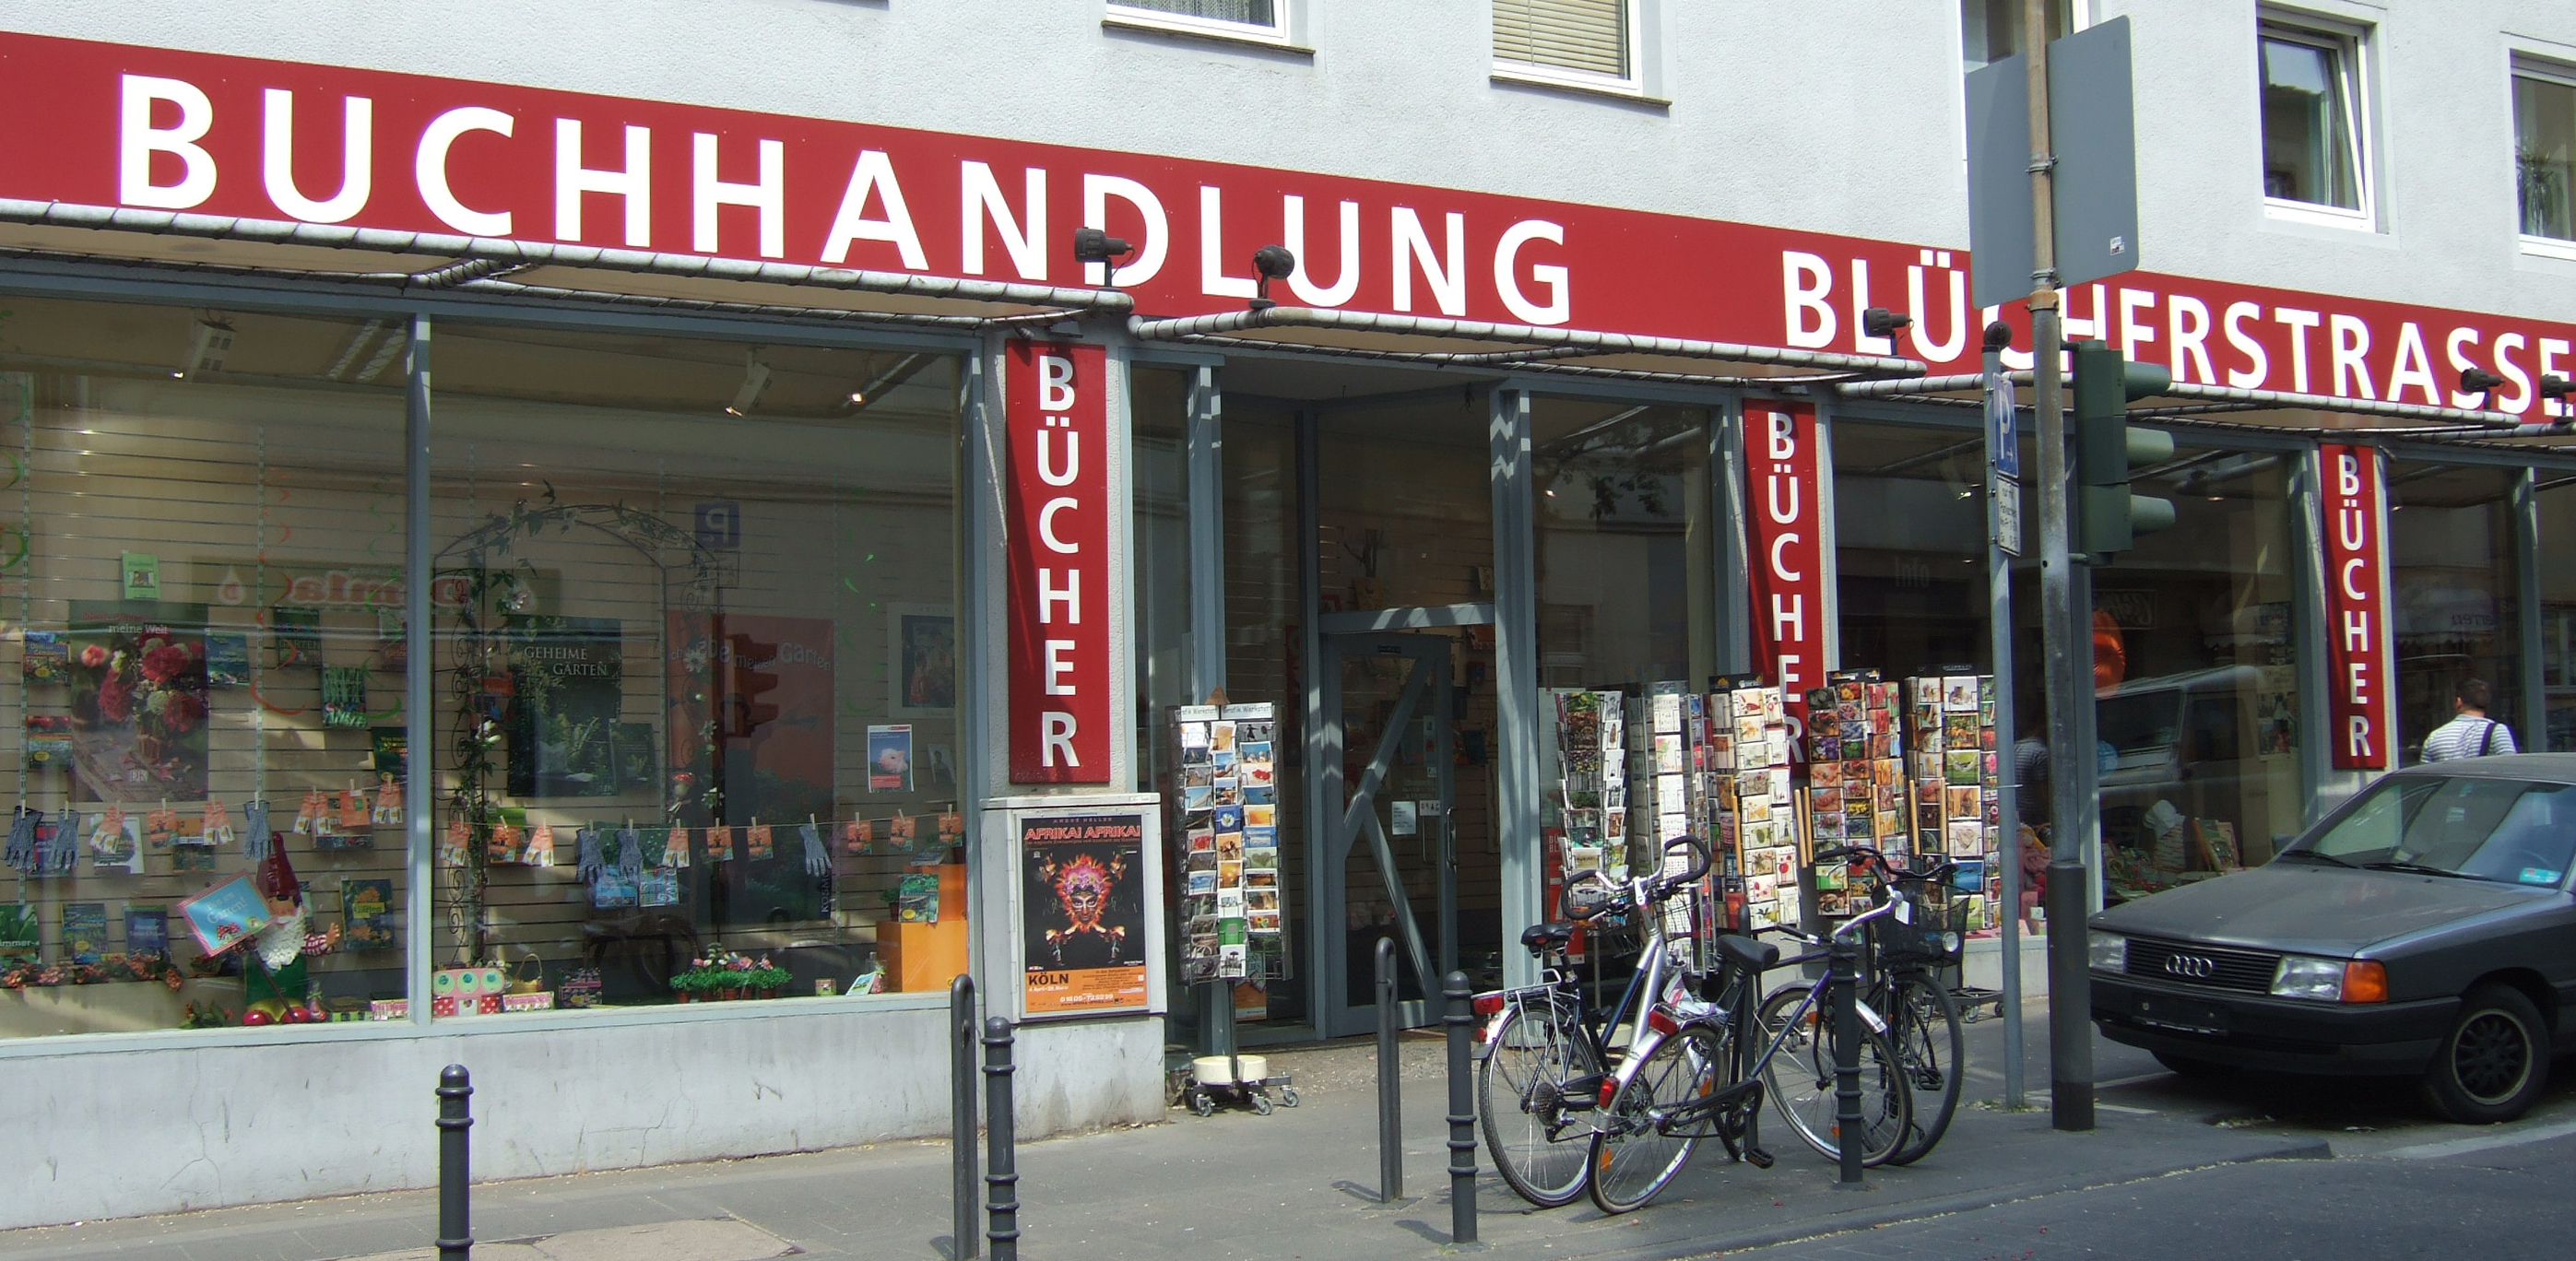 Buchhandlung Blücherstraße